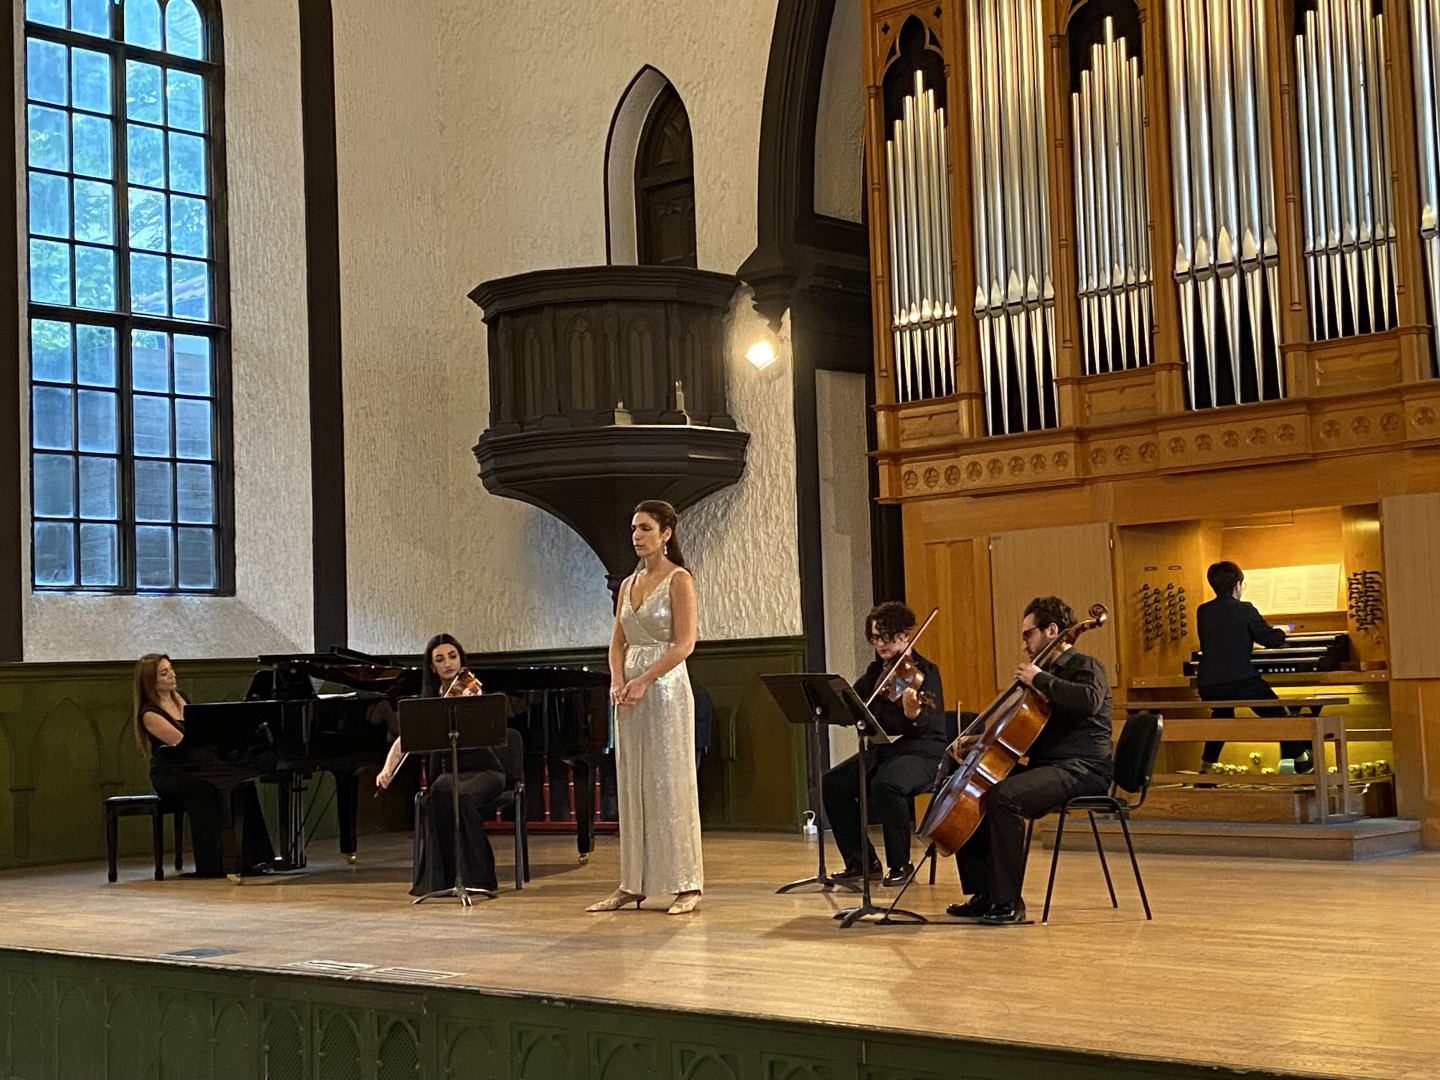 Шедевры органной музыки в Баку - красиво, мелодично и душевно (ФОТО/ВИДЕО)